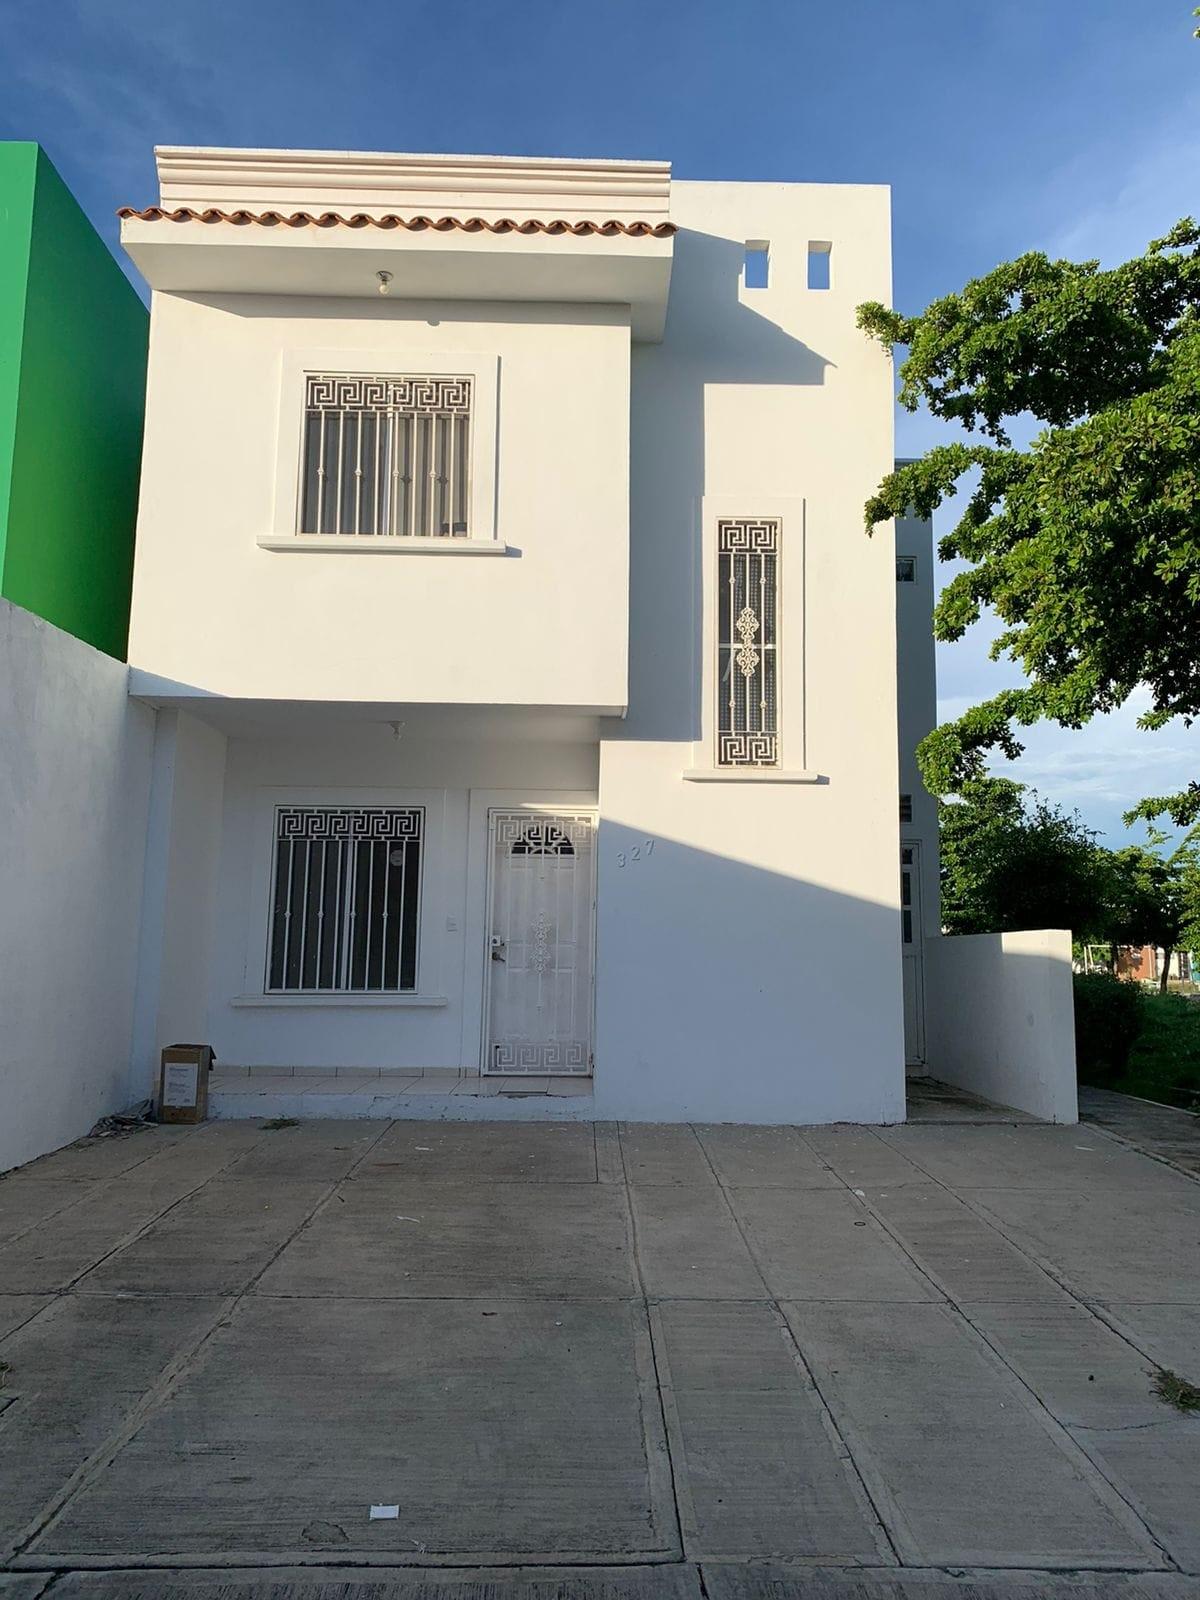 Club Campestre - Forza Inmobiliaria - Casas, departamentos, locales  comerciales, condominios en venta y renta en Mazatlán